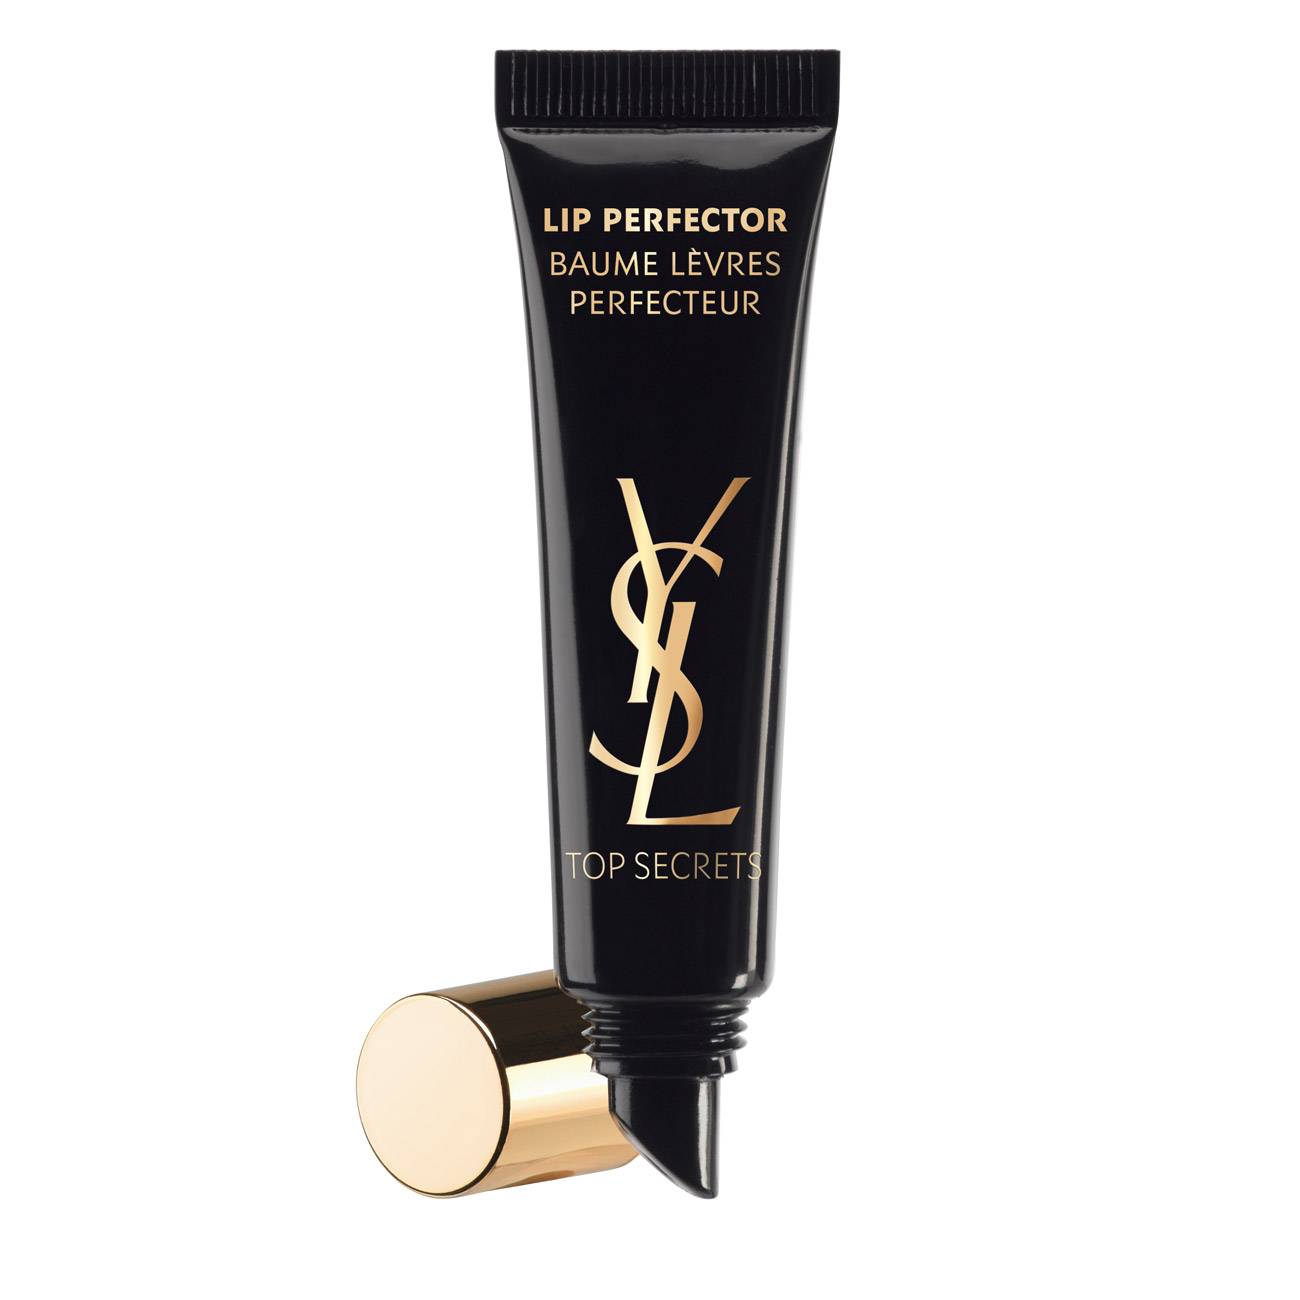 Tratament pentru buze Yves Saint Laurent TOP SECRETS LIP PERFECTOR 15 Ml cu comanda online